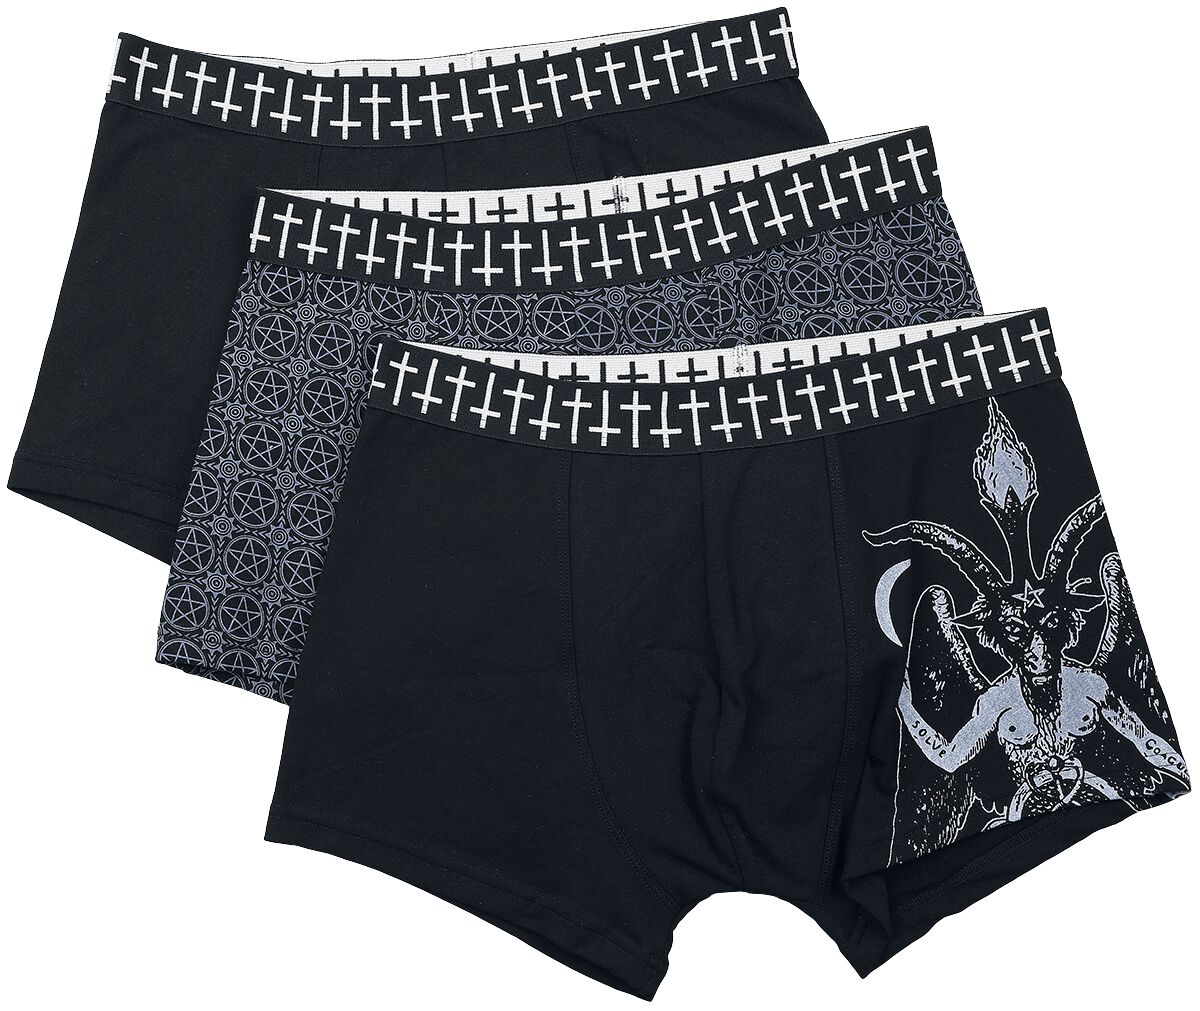 Gothicana by EMP Black Boxer Shorts with Gothic Symbols Boxer Shorts Set black